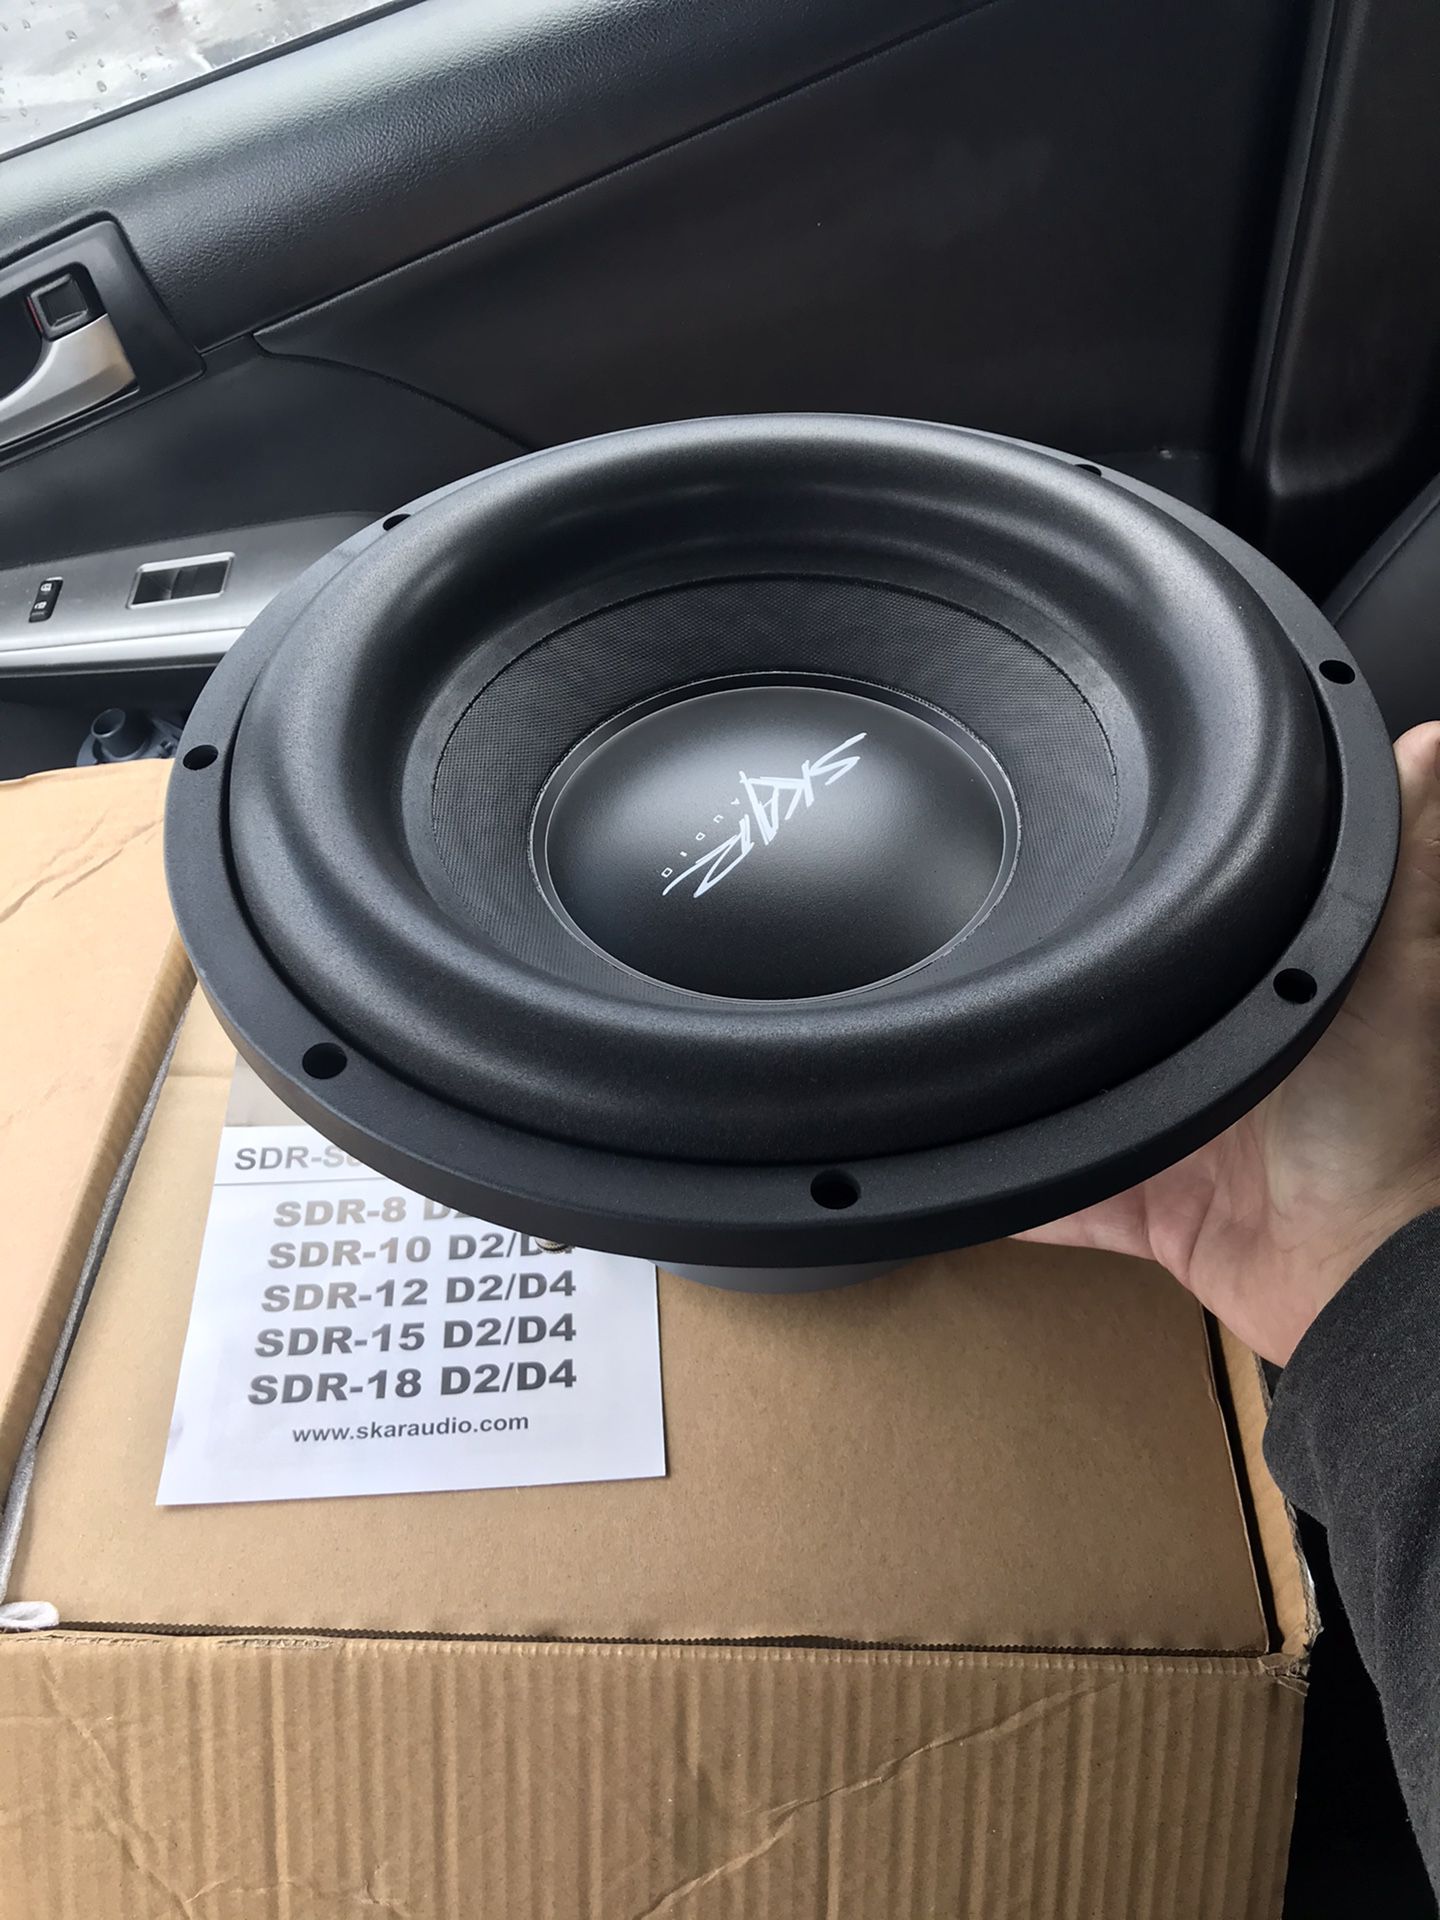 Skar audio sdr-12d4 subwoofer brand new in box